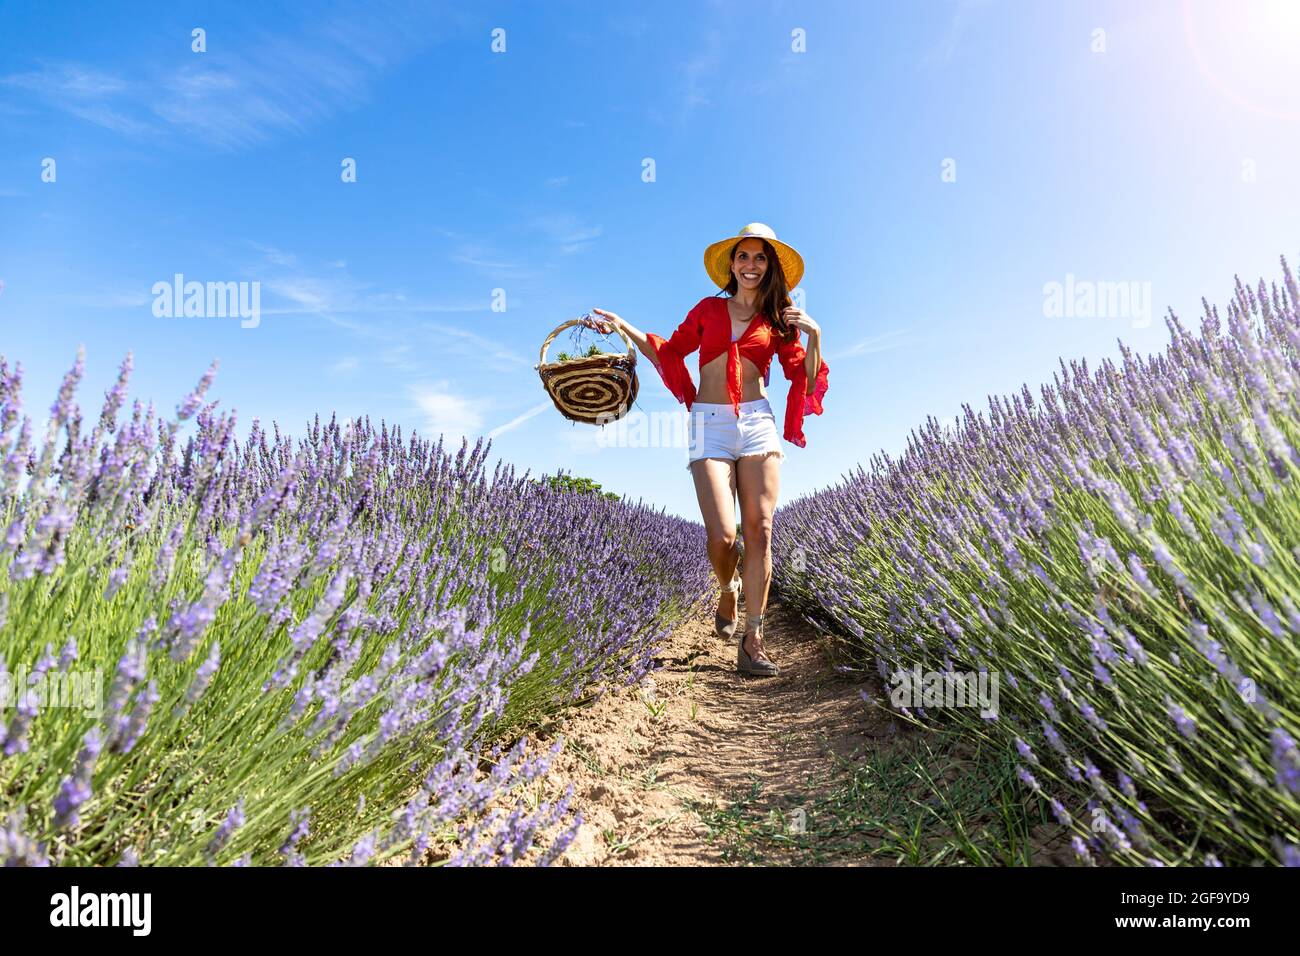 Eine glückliche junge Frau, die auf einem Lavendelfeld mit einem Korb in der Hand geht. Sie trägt eine rote Bluse, weiße Shorts und einen Strohhut. Konzept der Liebe Stockfoto